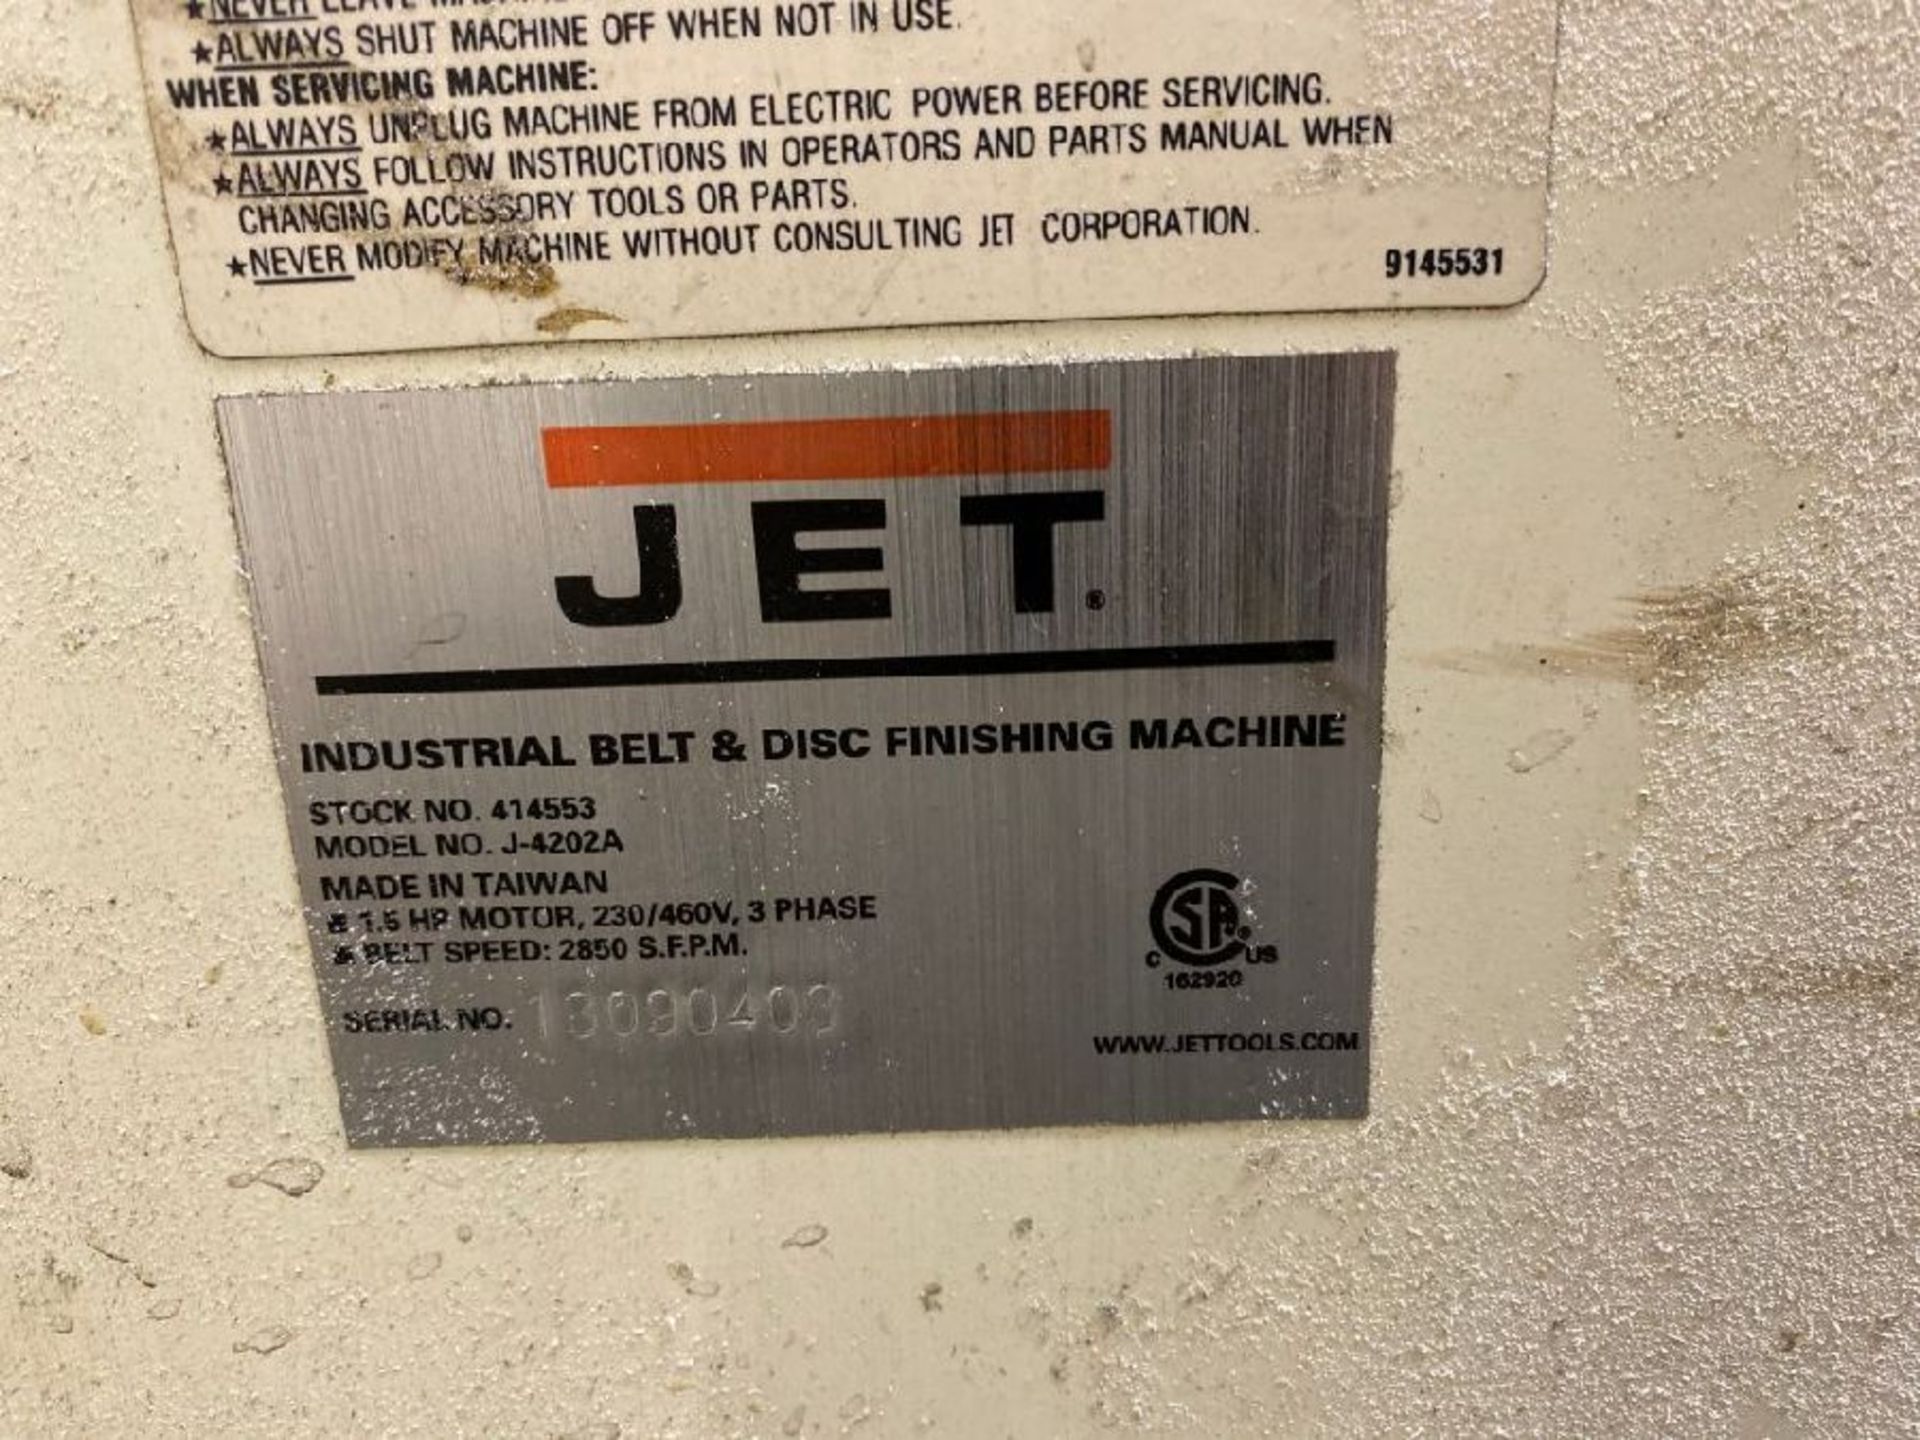 Jet Model J-4202A Combination Belt & Disc Finisher - Image 4 of 4